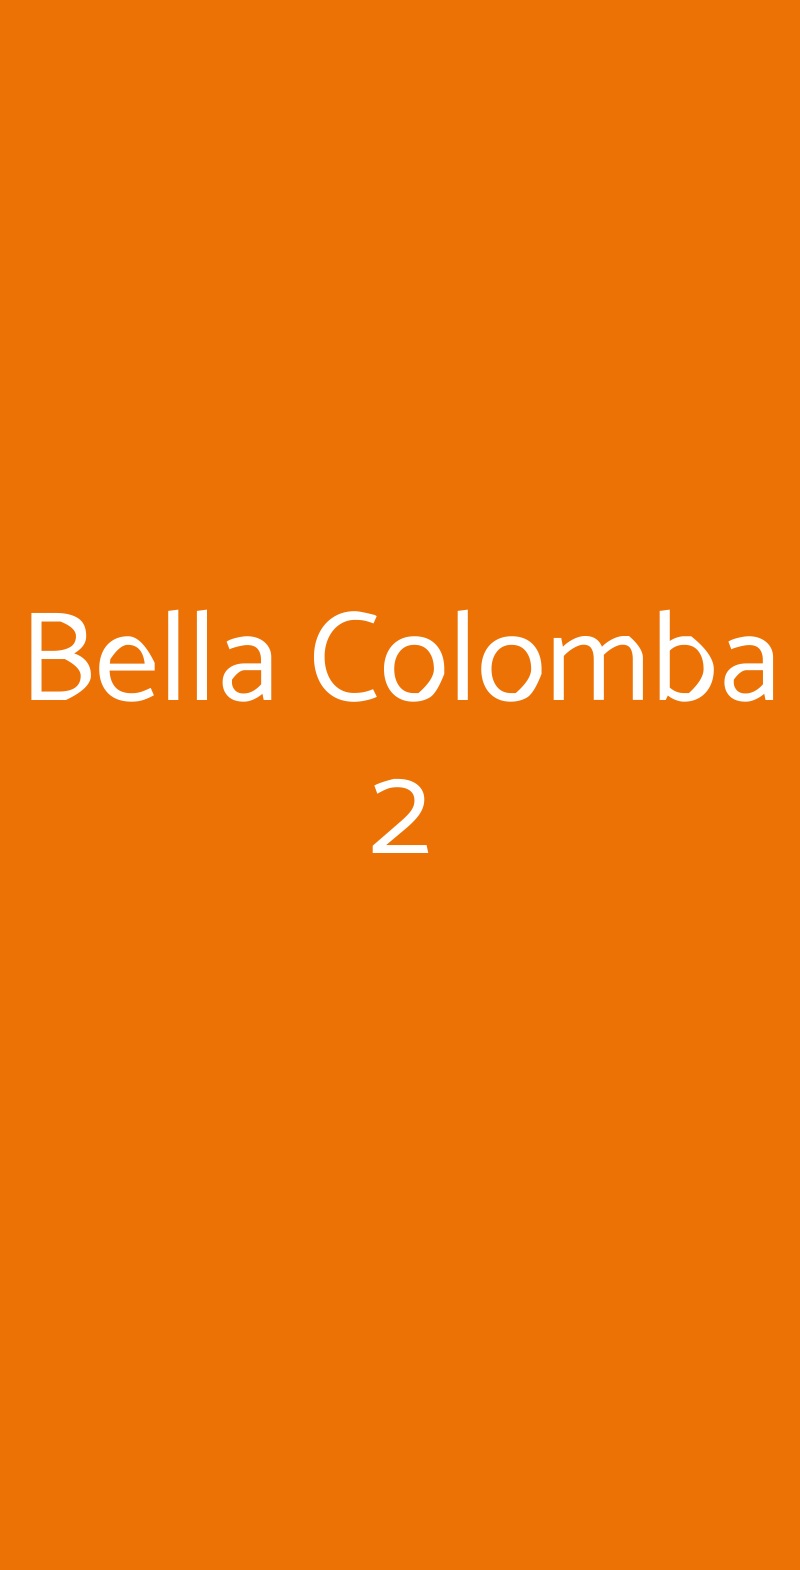 Bella Colomba 2 Milano menù 1 pagina